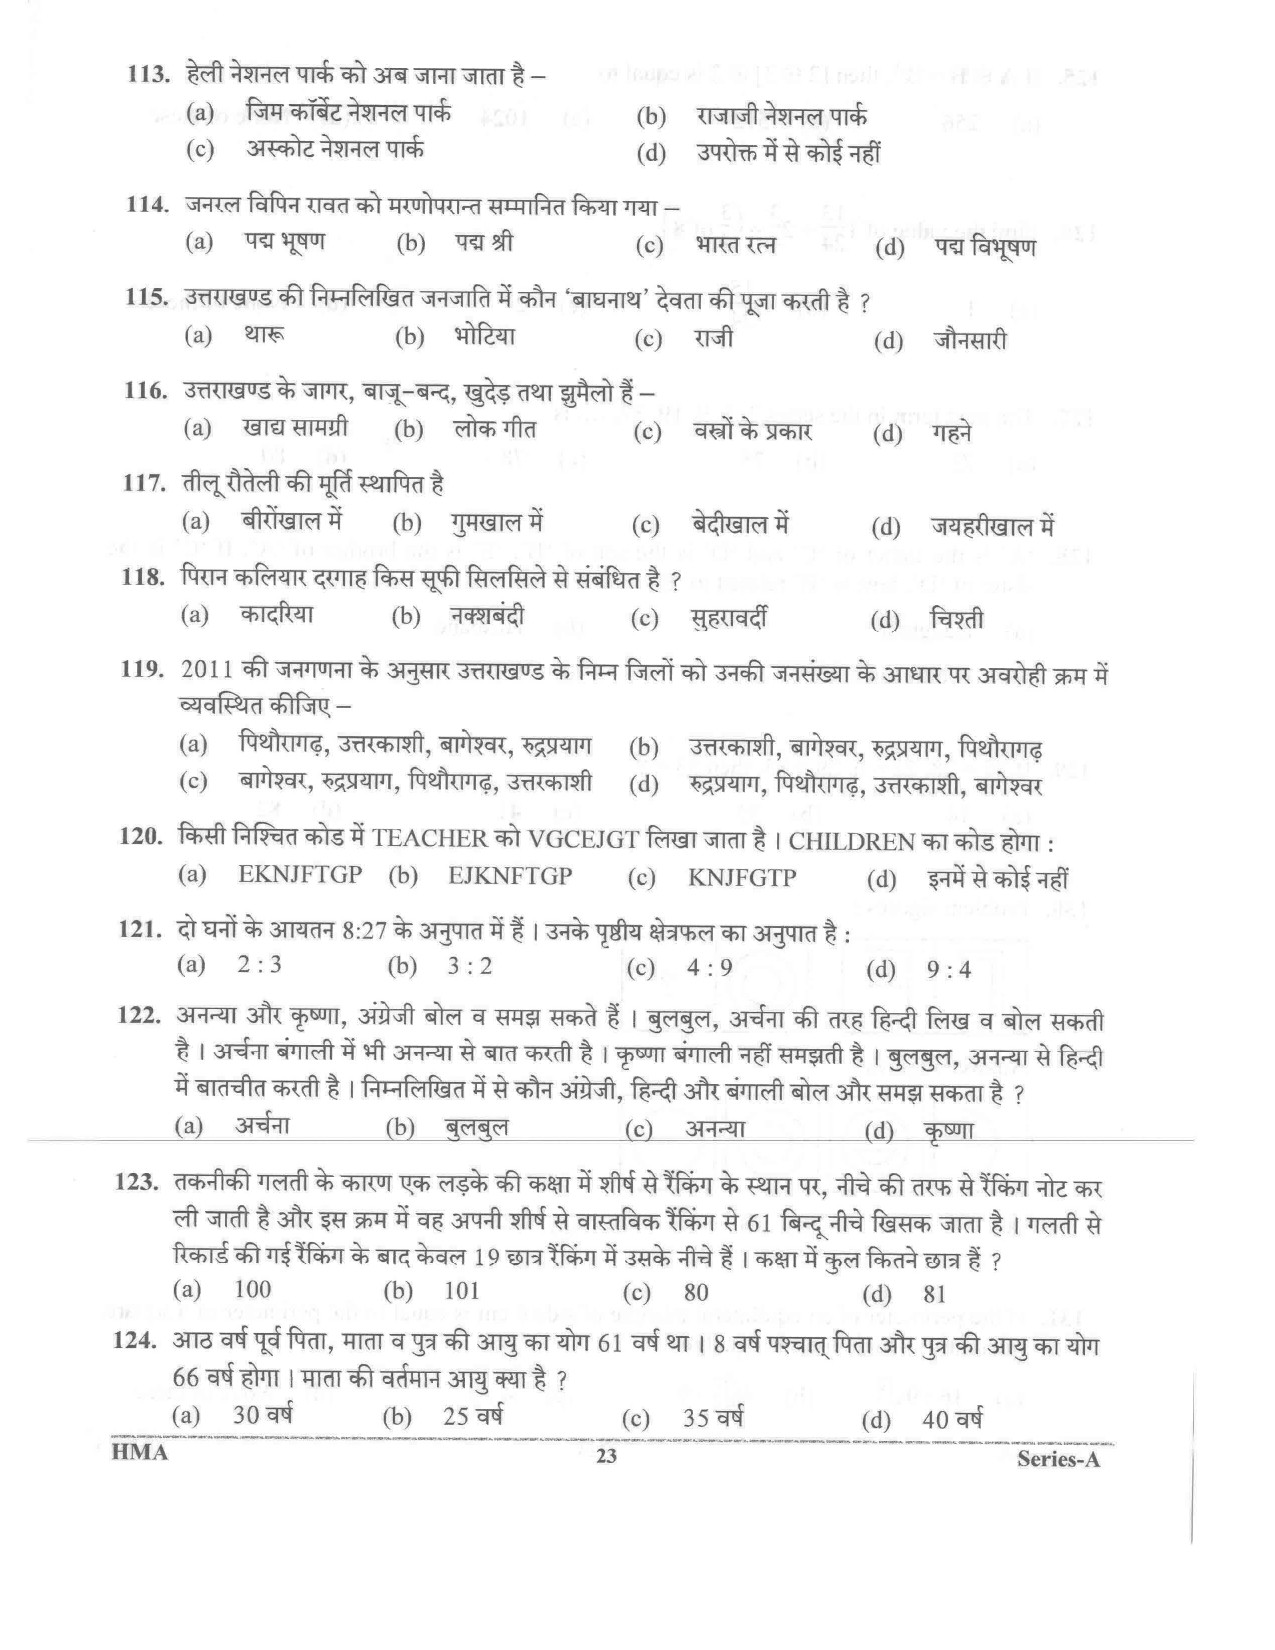 UKPSC Vyawasthapak Examination Question Paper 2021 22